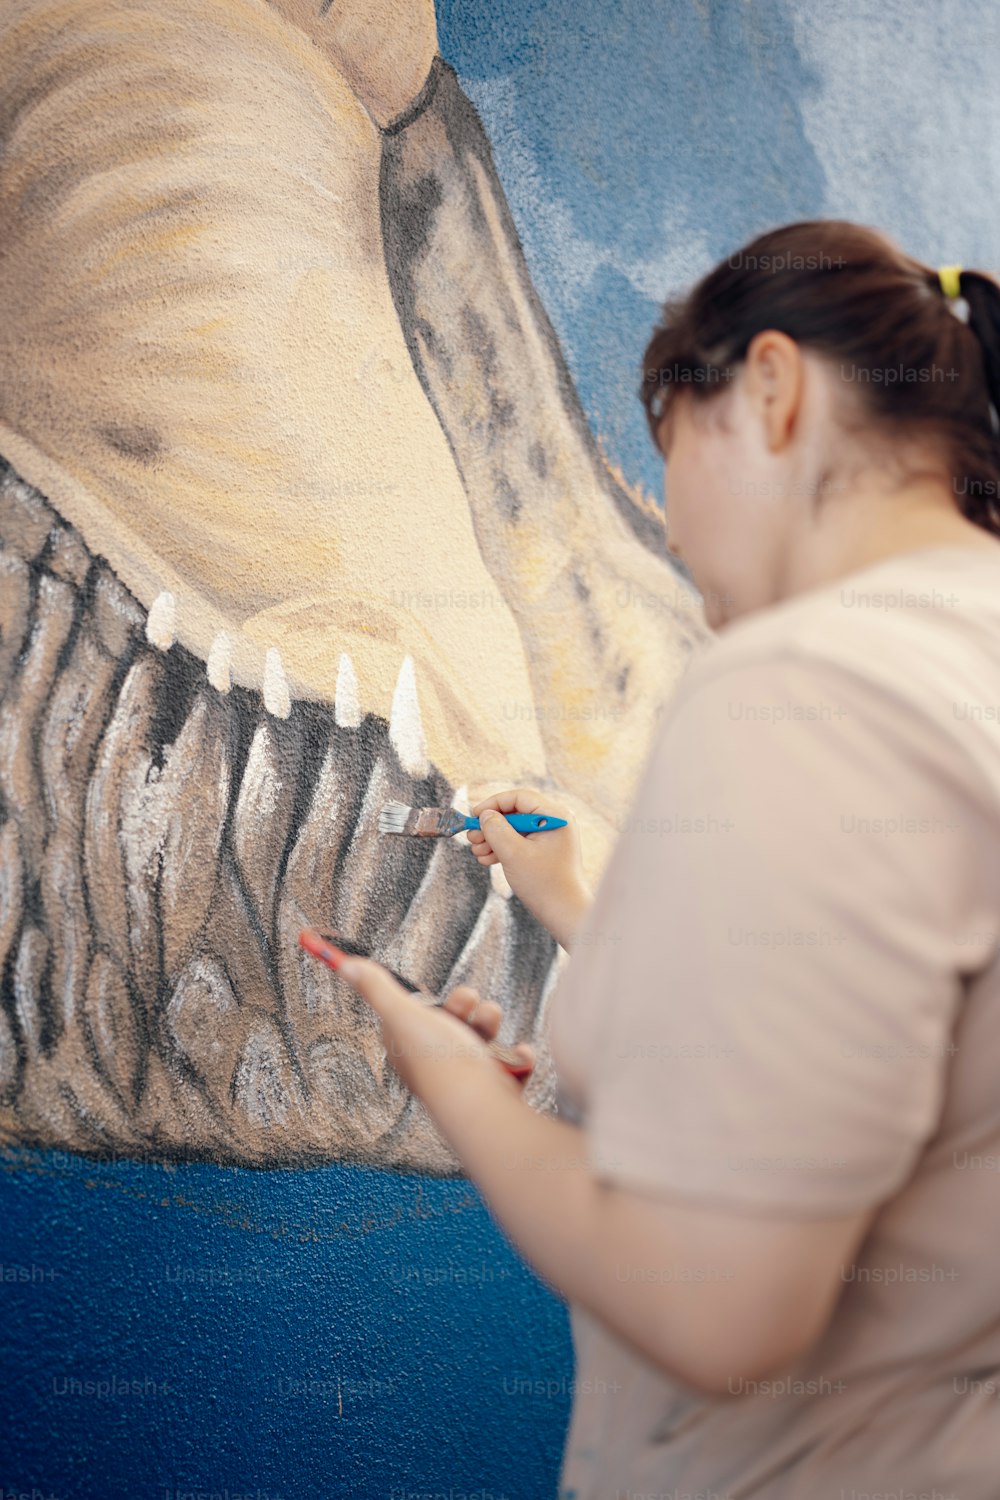 Une femme peint l’image d’un dinosaure